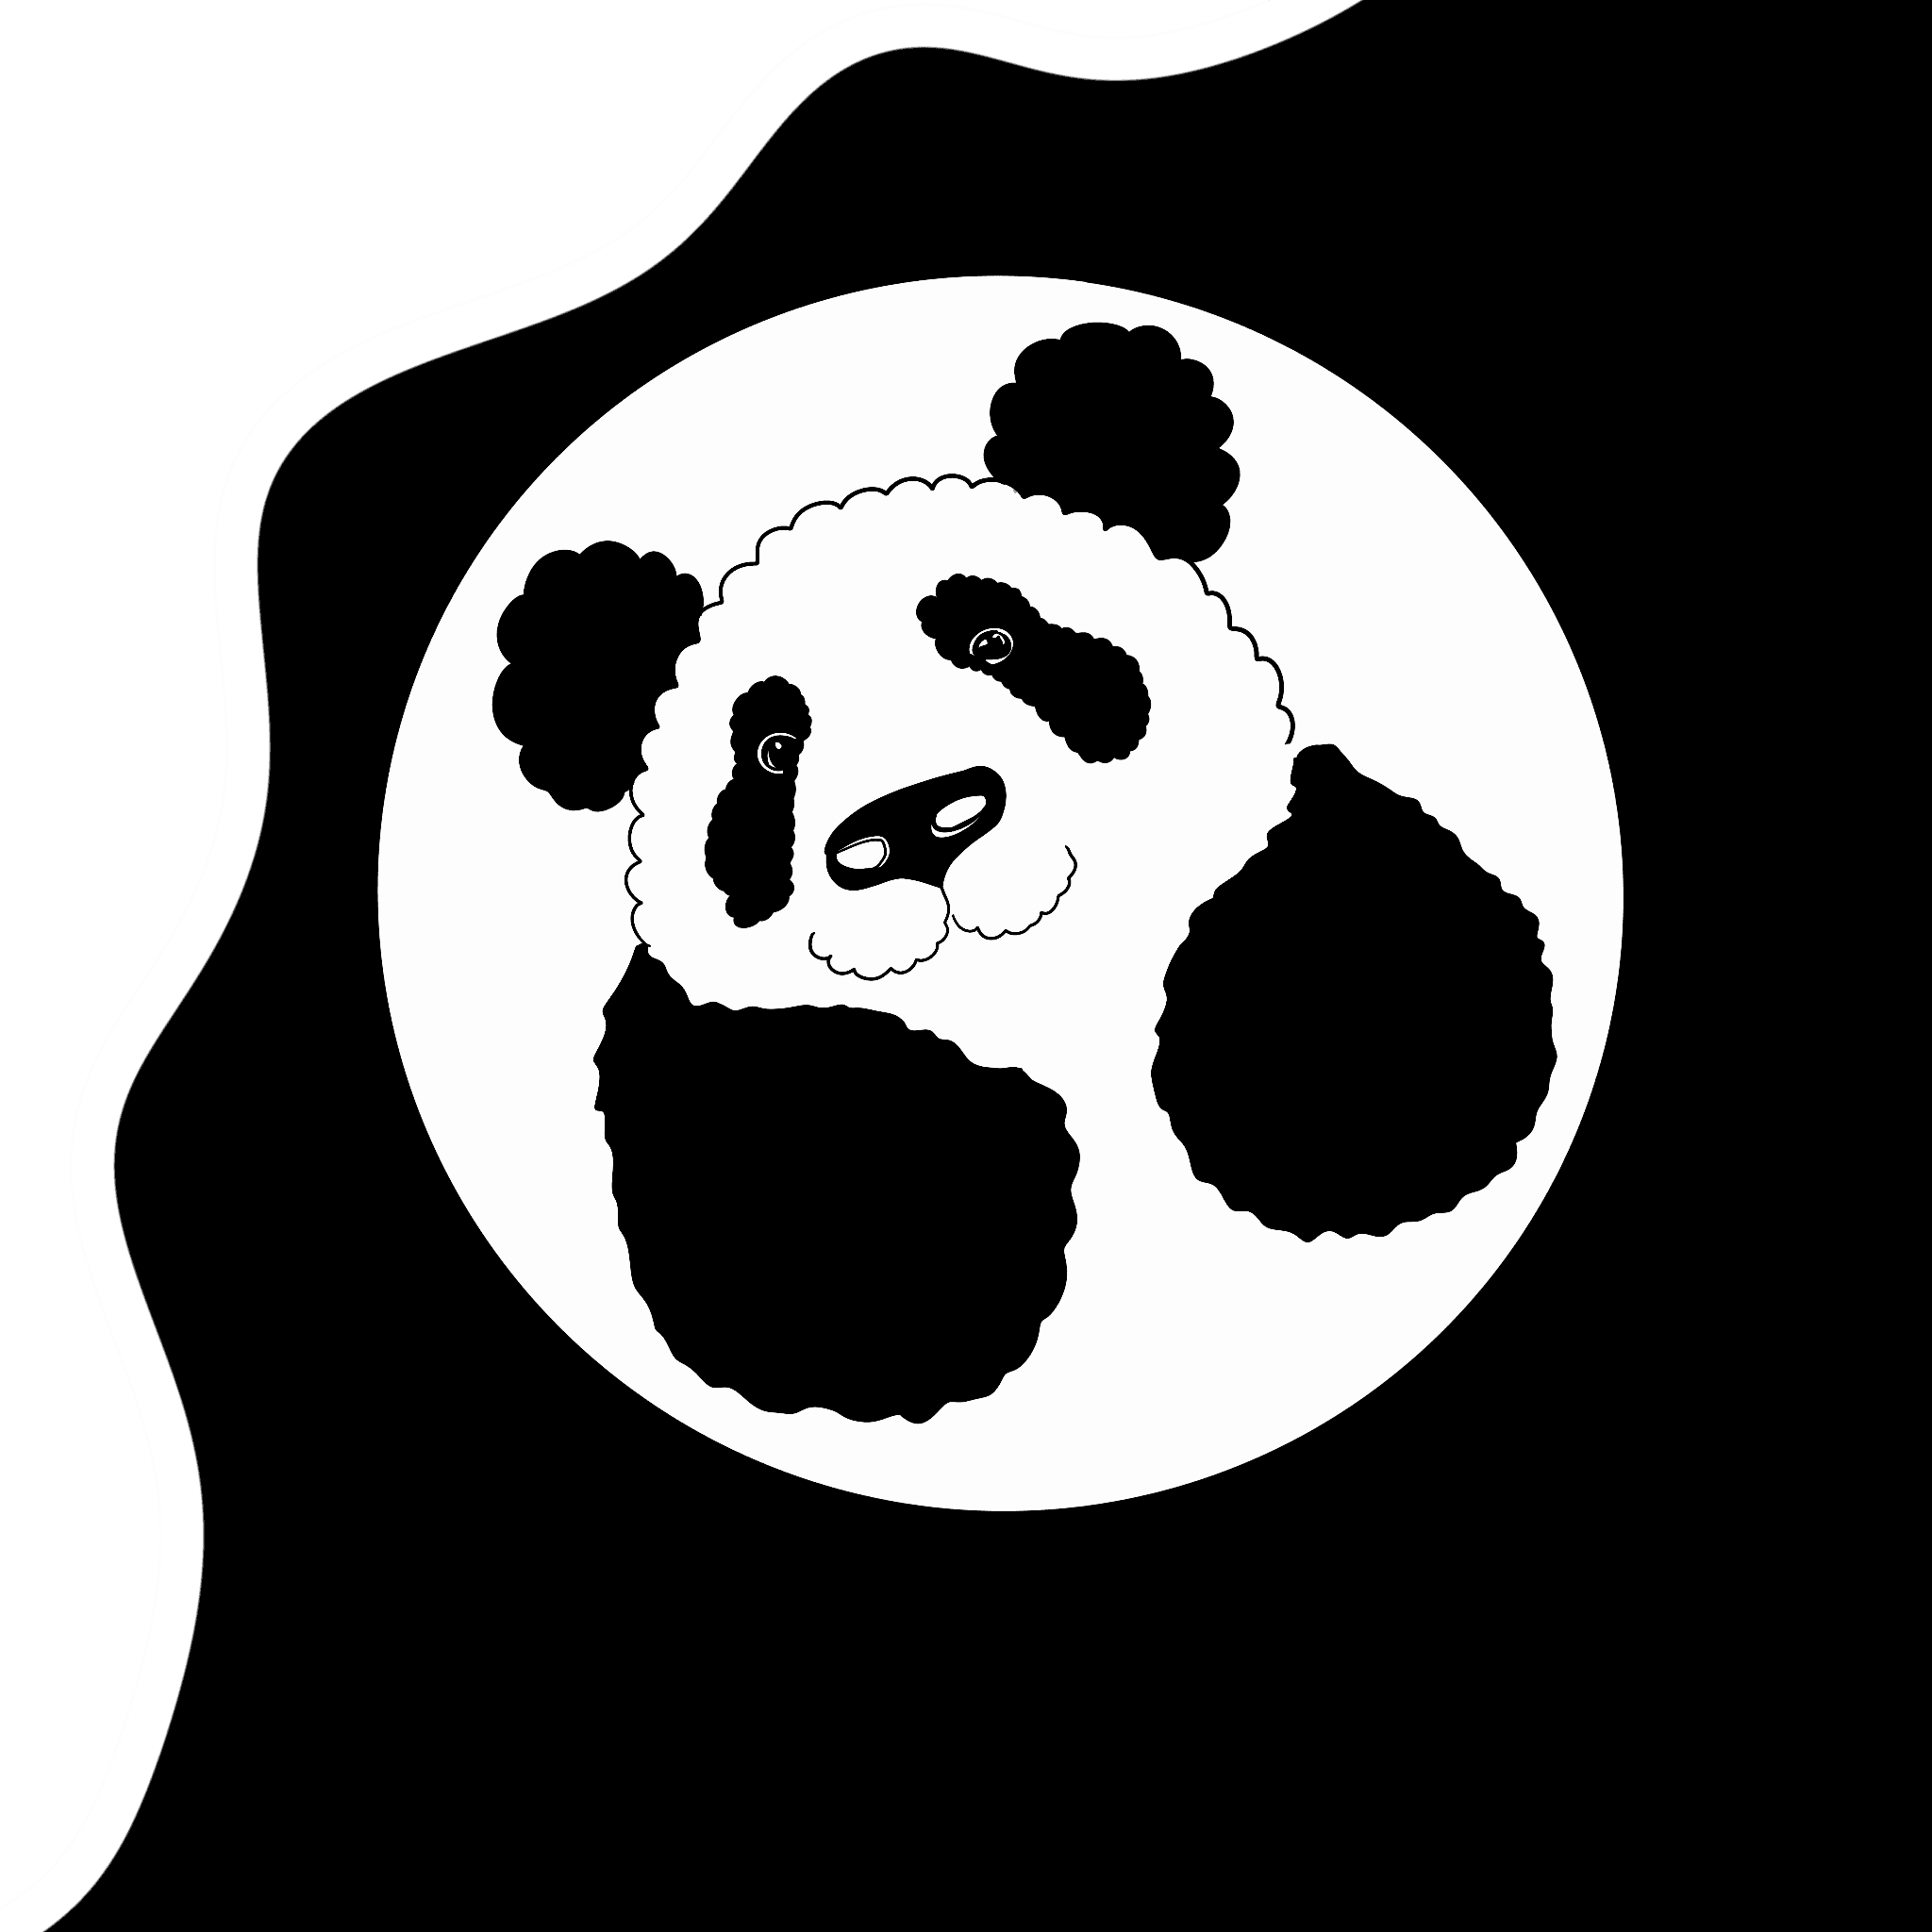 Papaya the Panda